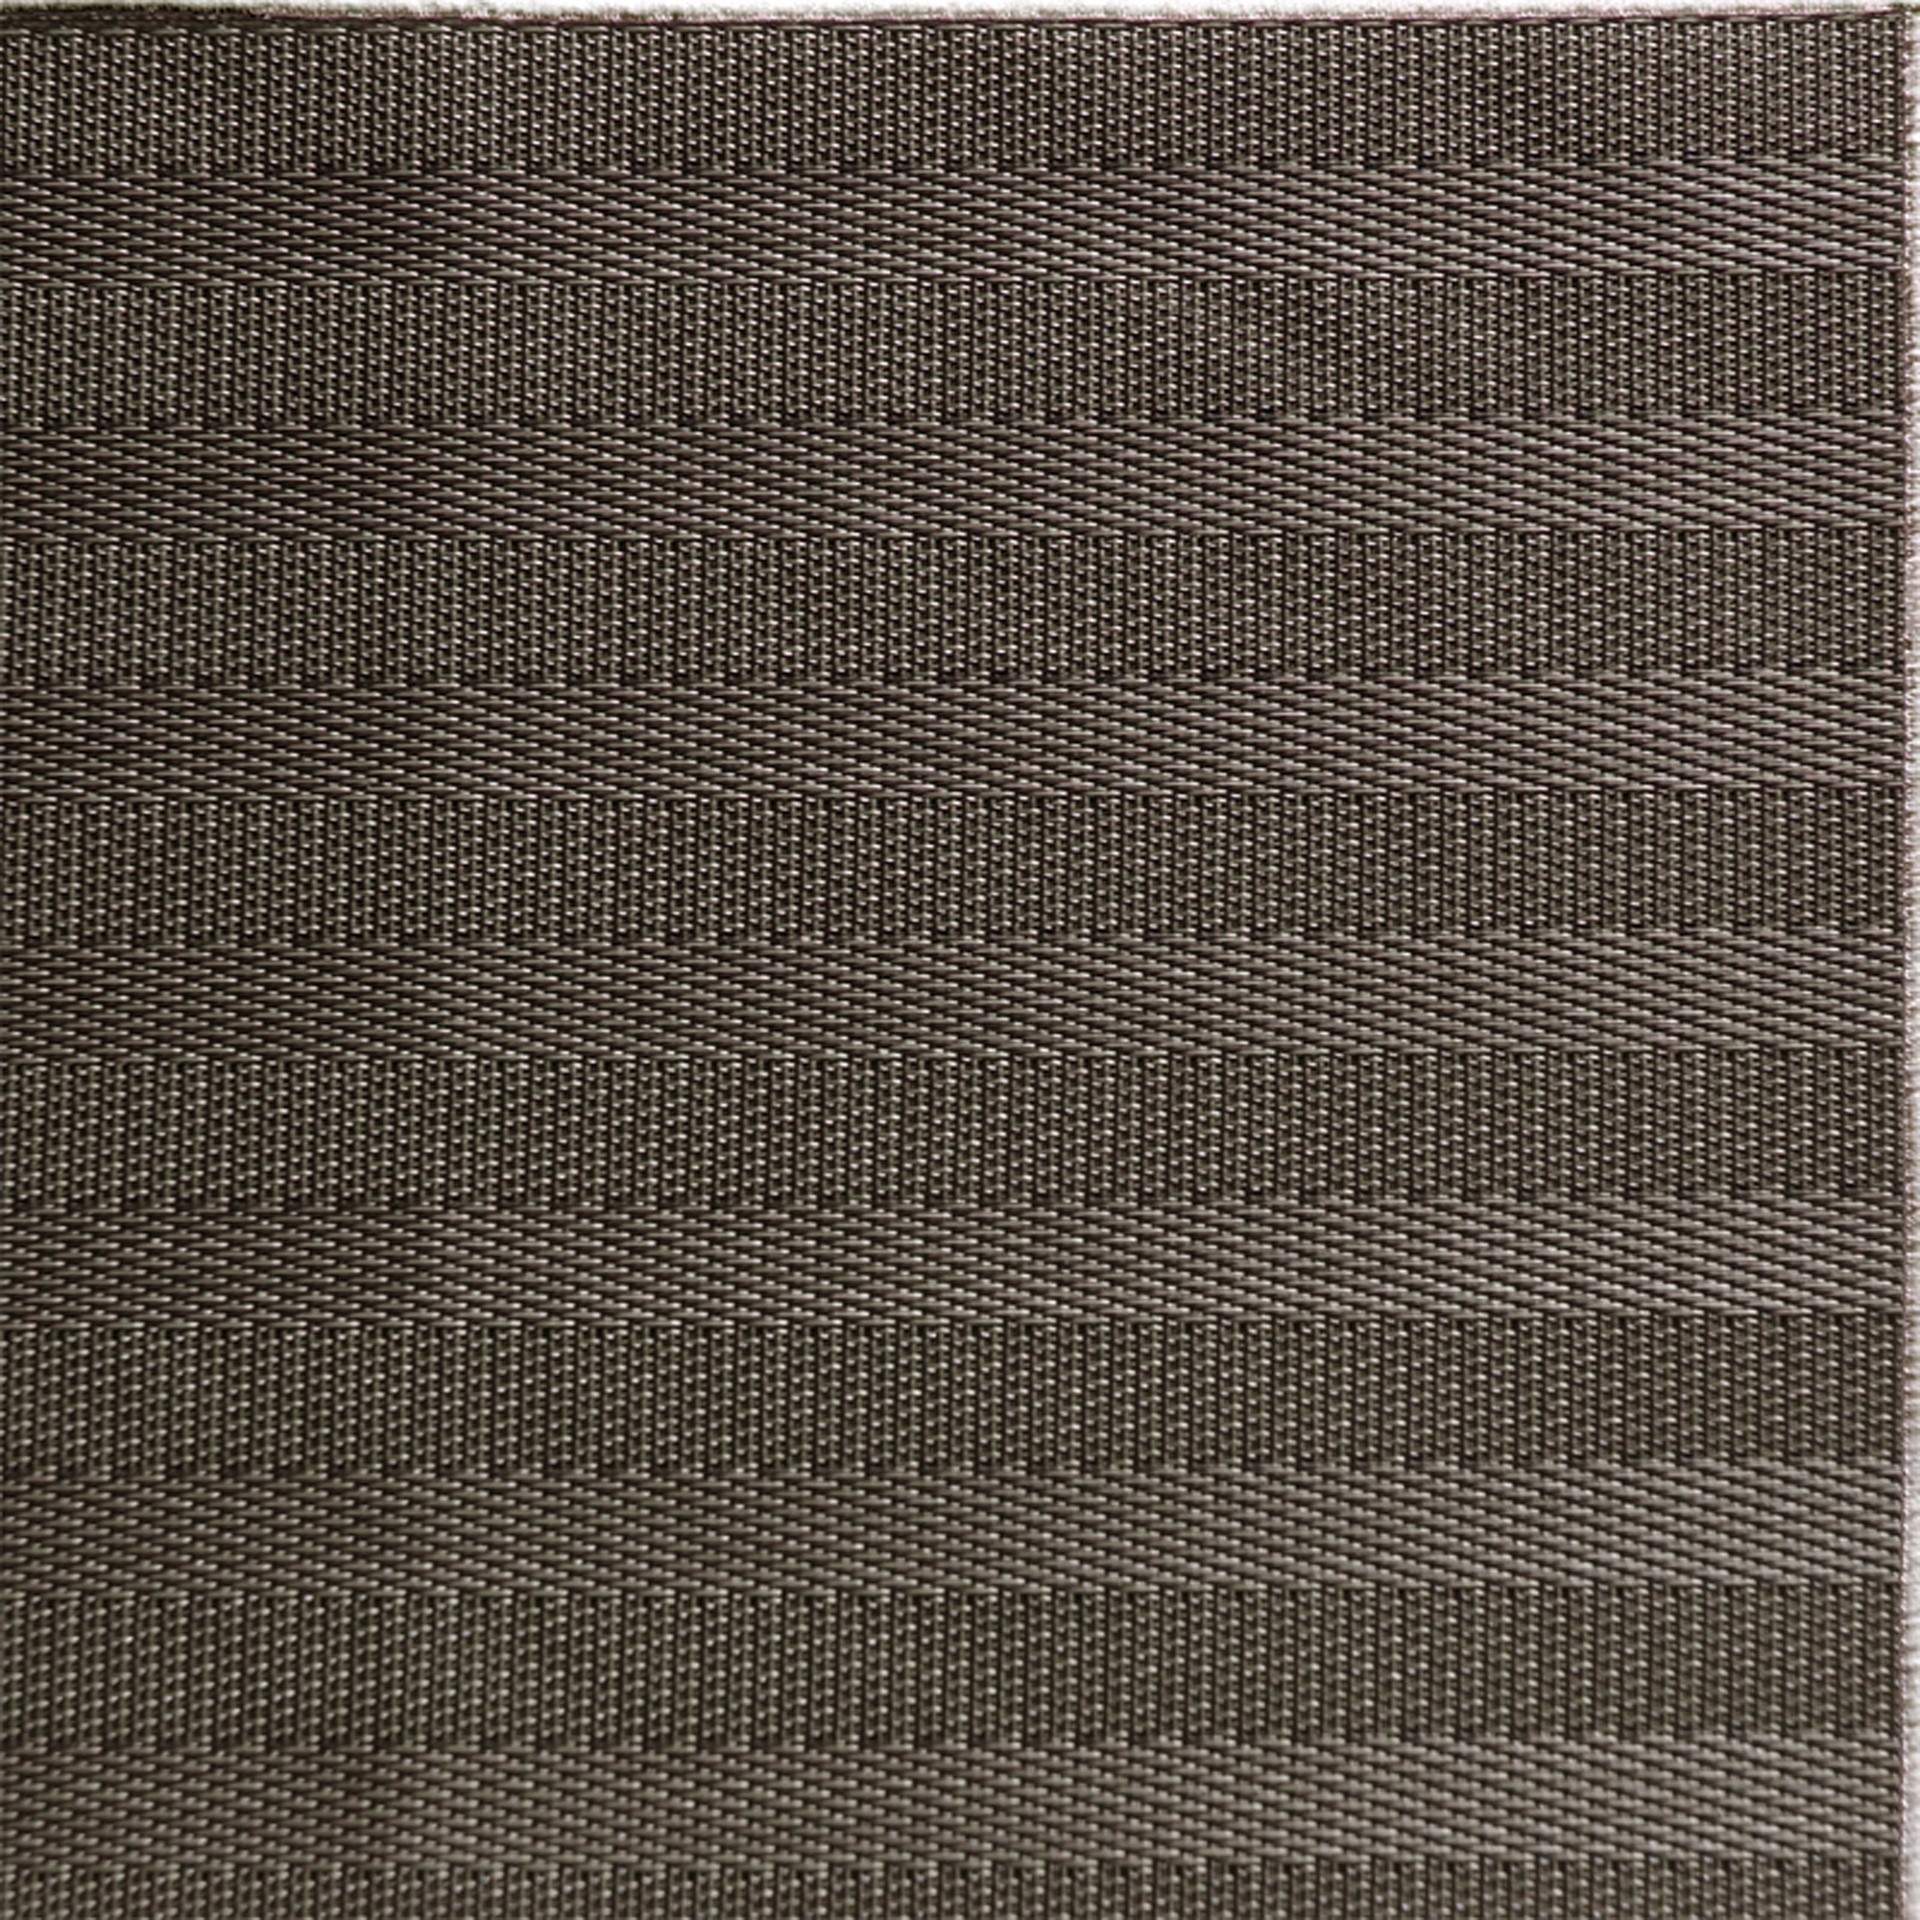 Tischset - Feinband - Serie Tao - braun - rechteckig - Abm. 45 x 33 cm - PVC - 60505-B